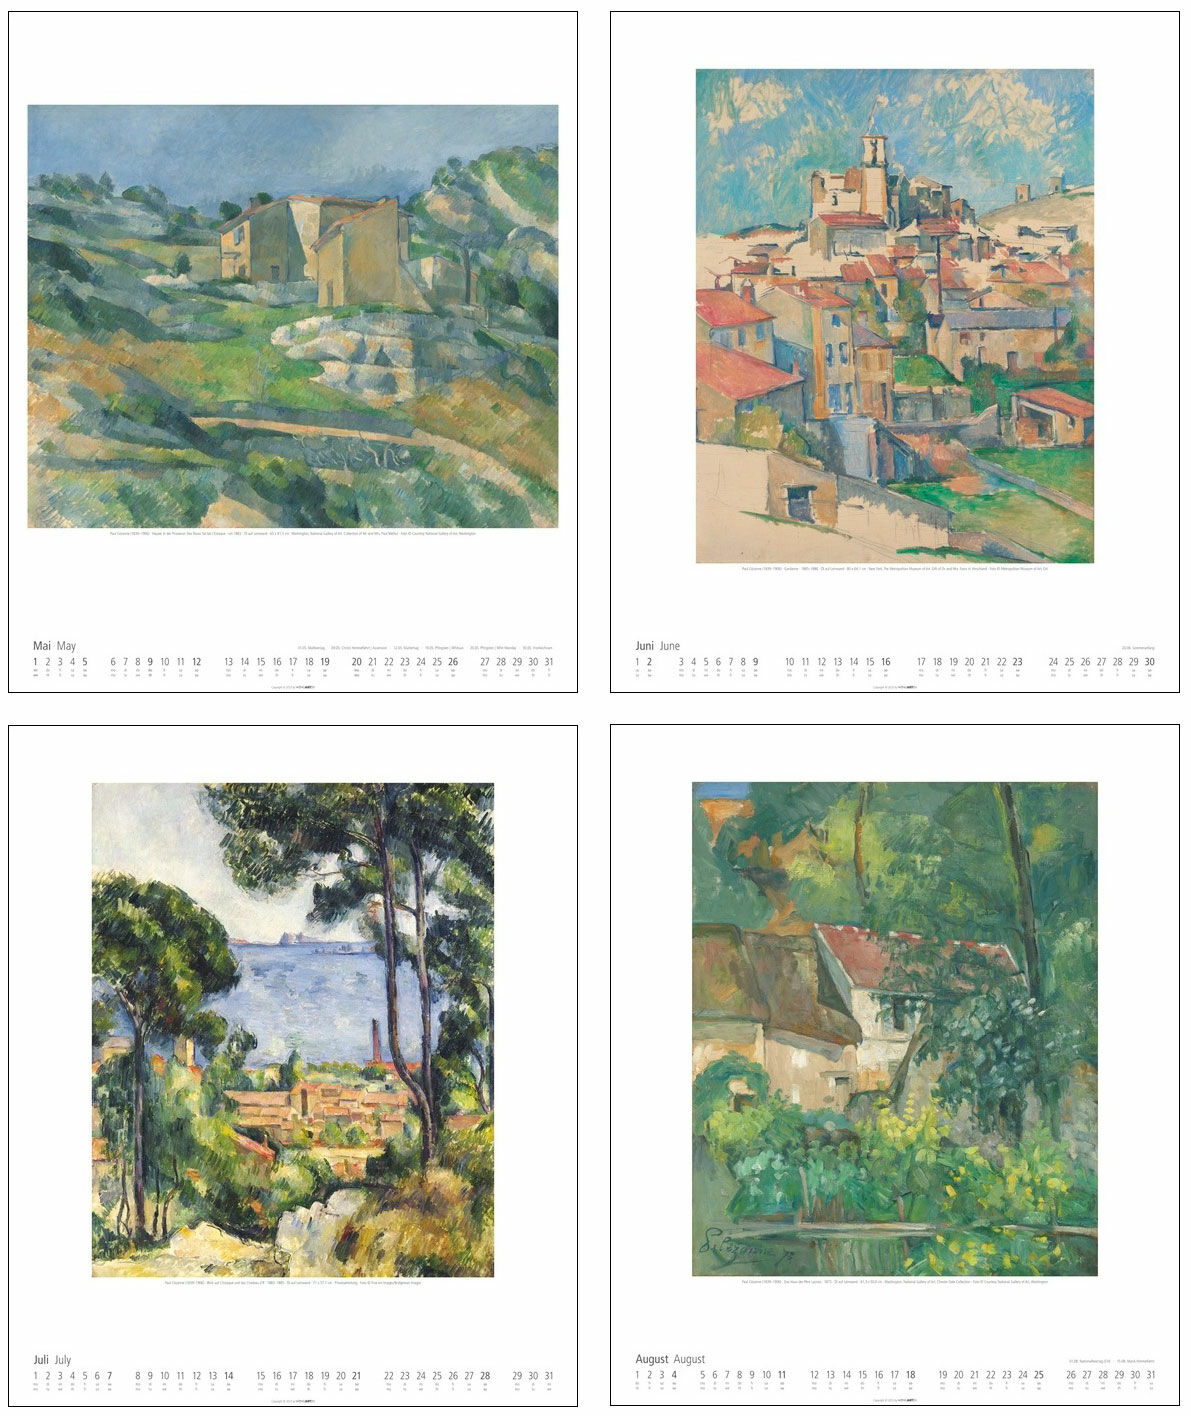 Künstlerkalender 2024 von Paul Cézanne